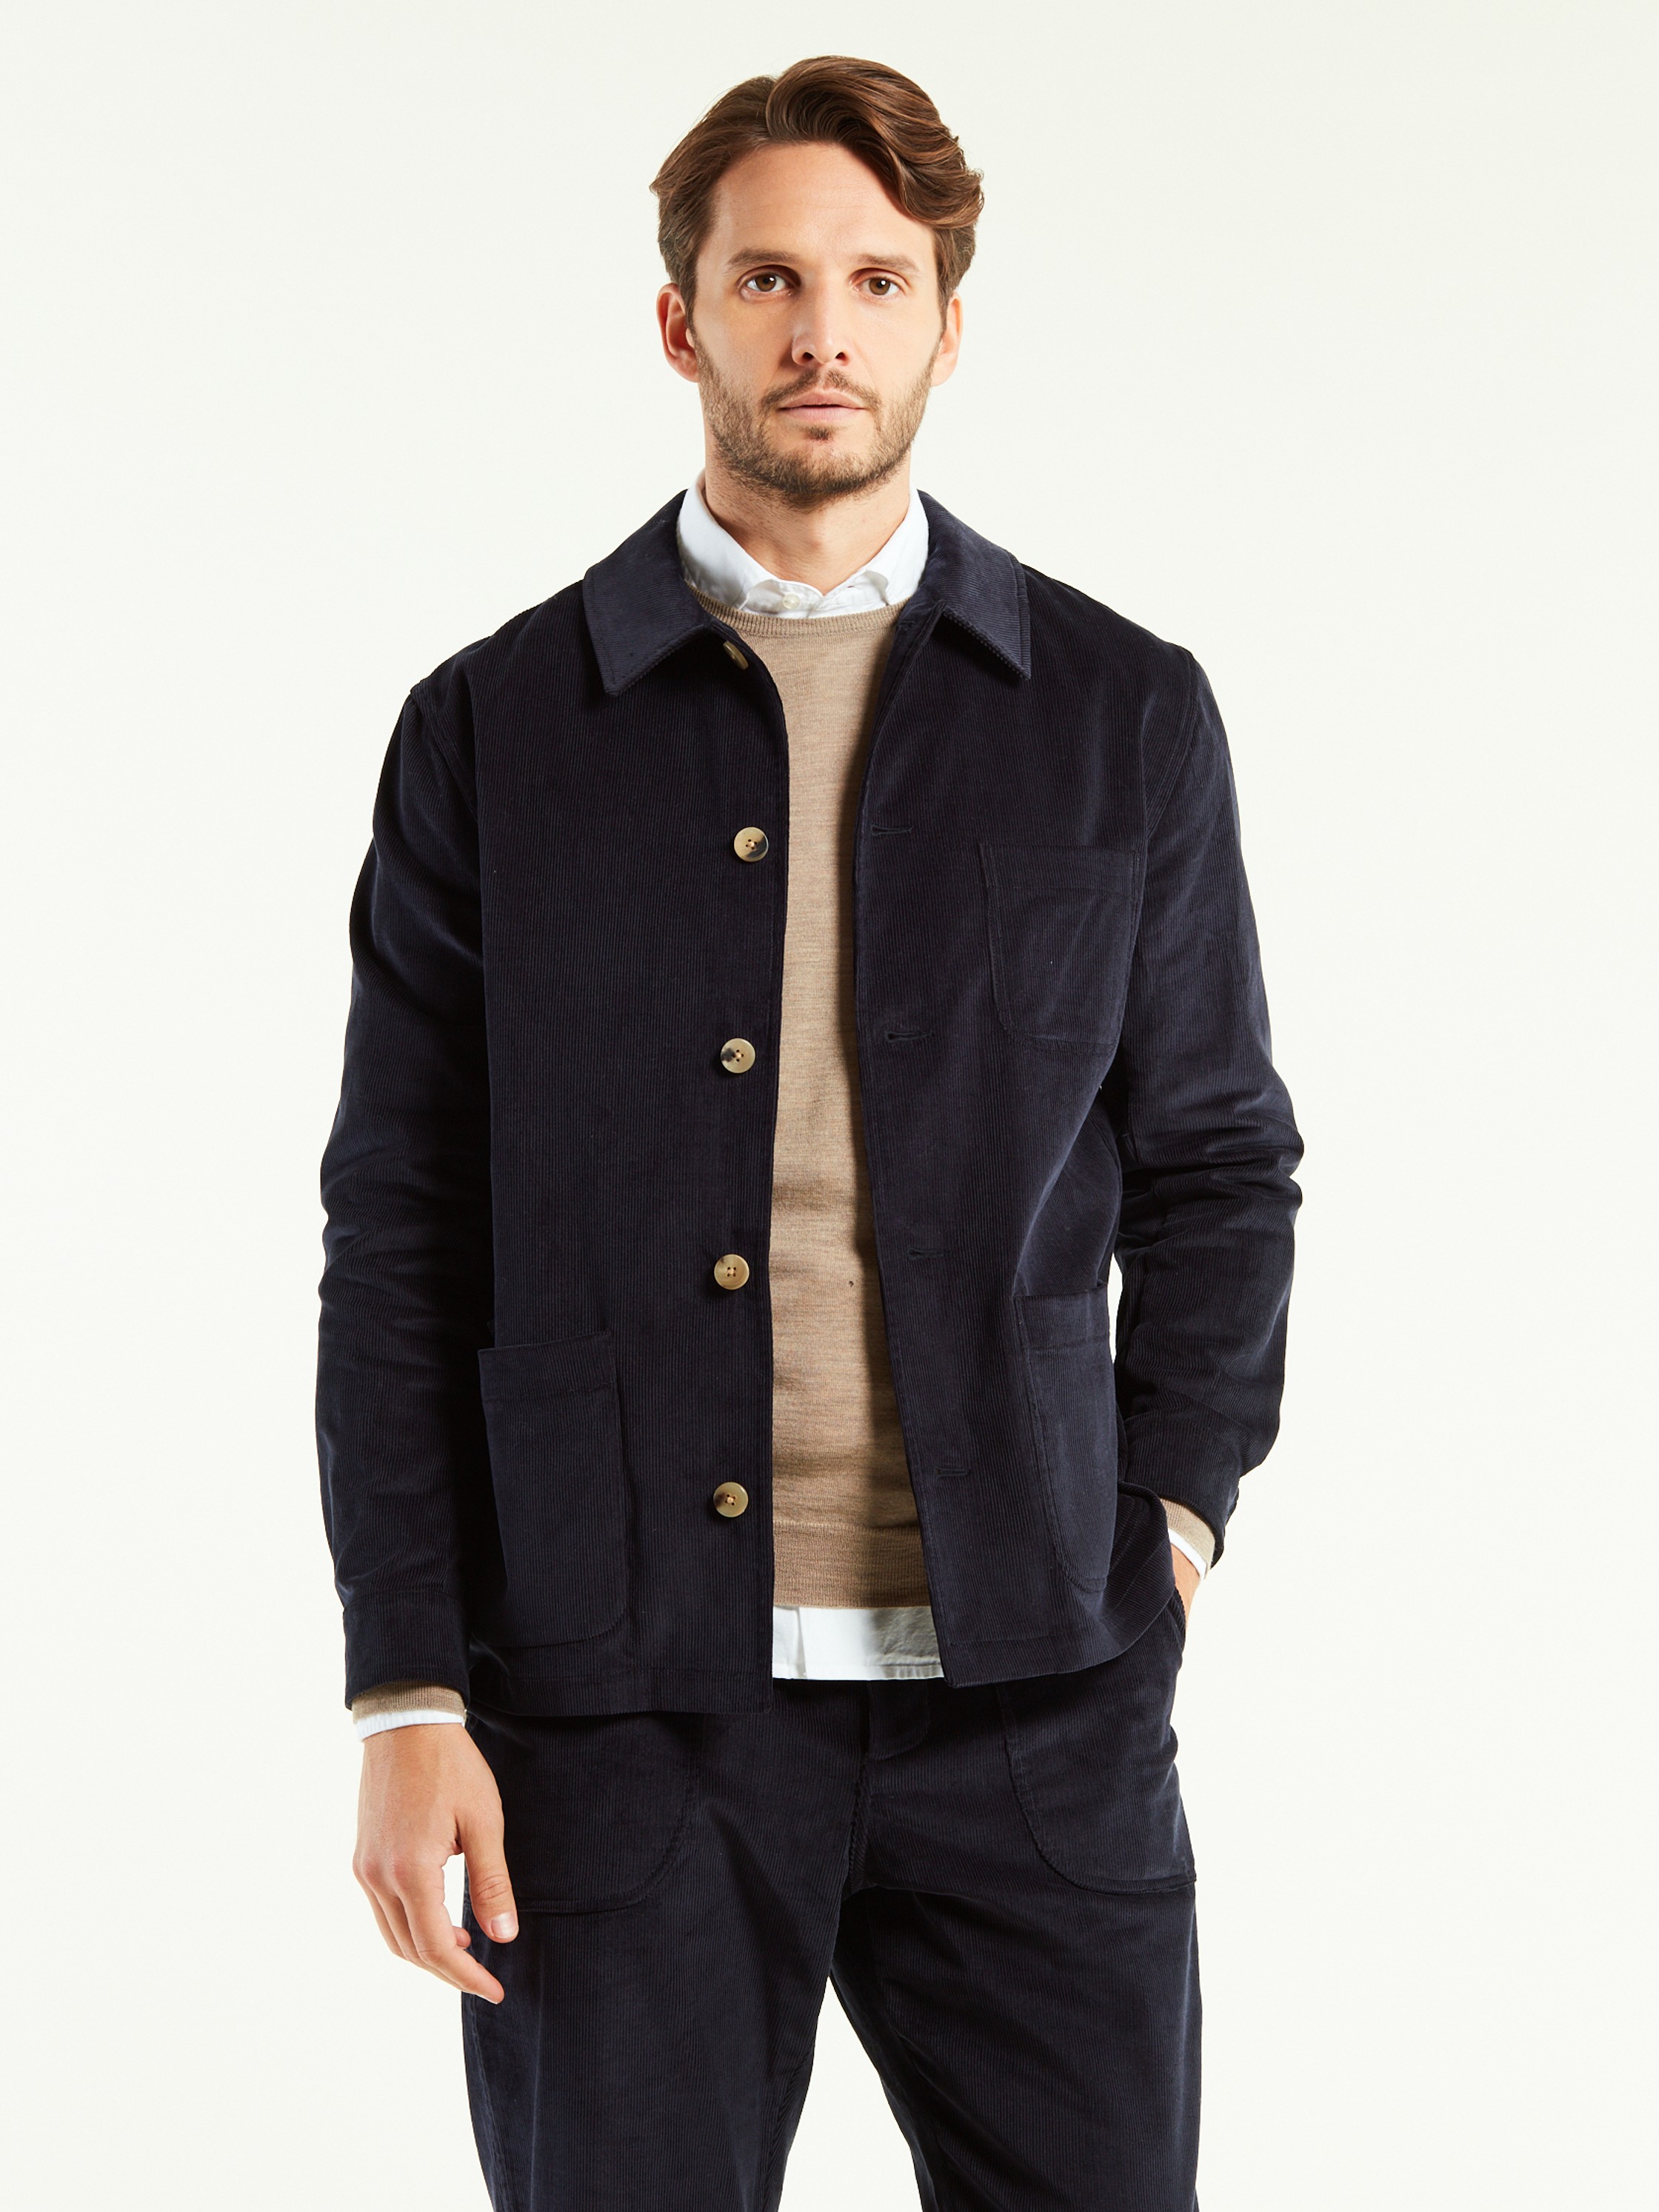 Fine corduroy work jacket - De Bonne Facture - Clothing - Shop | Monocle